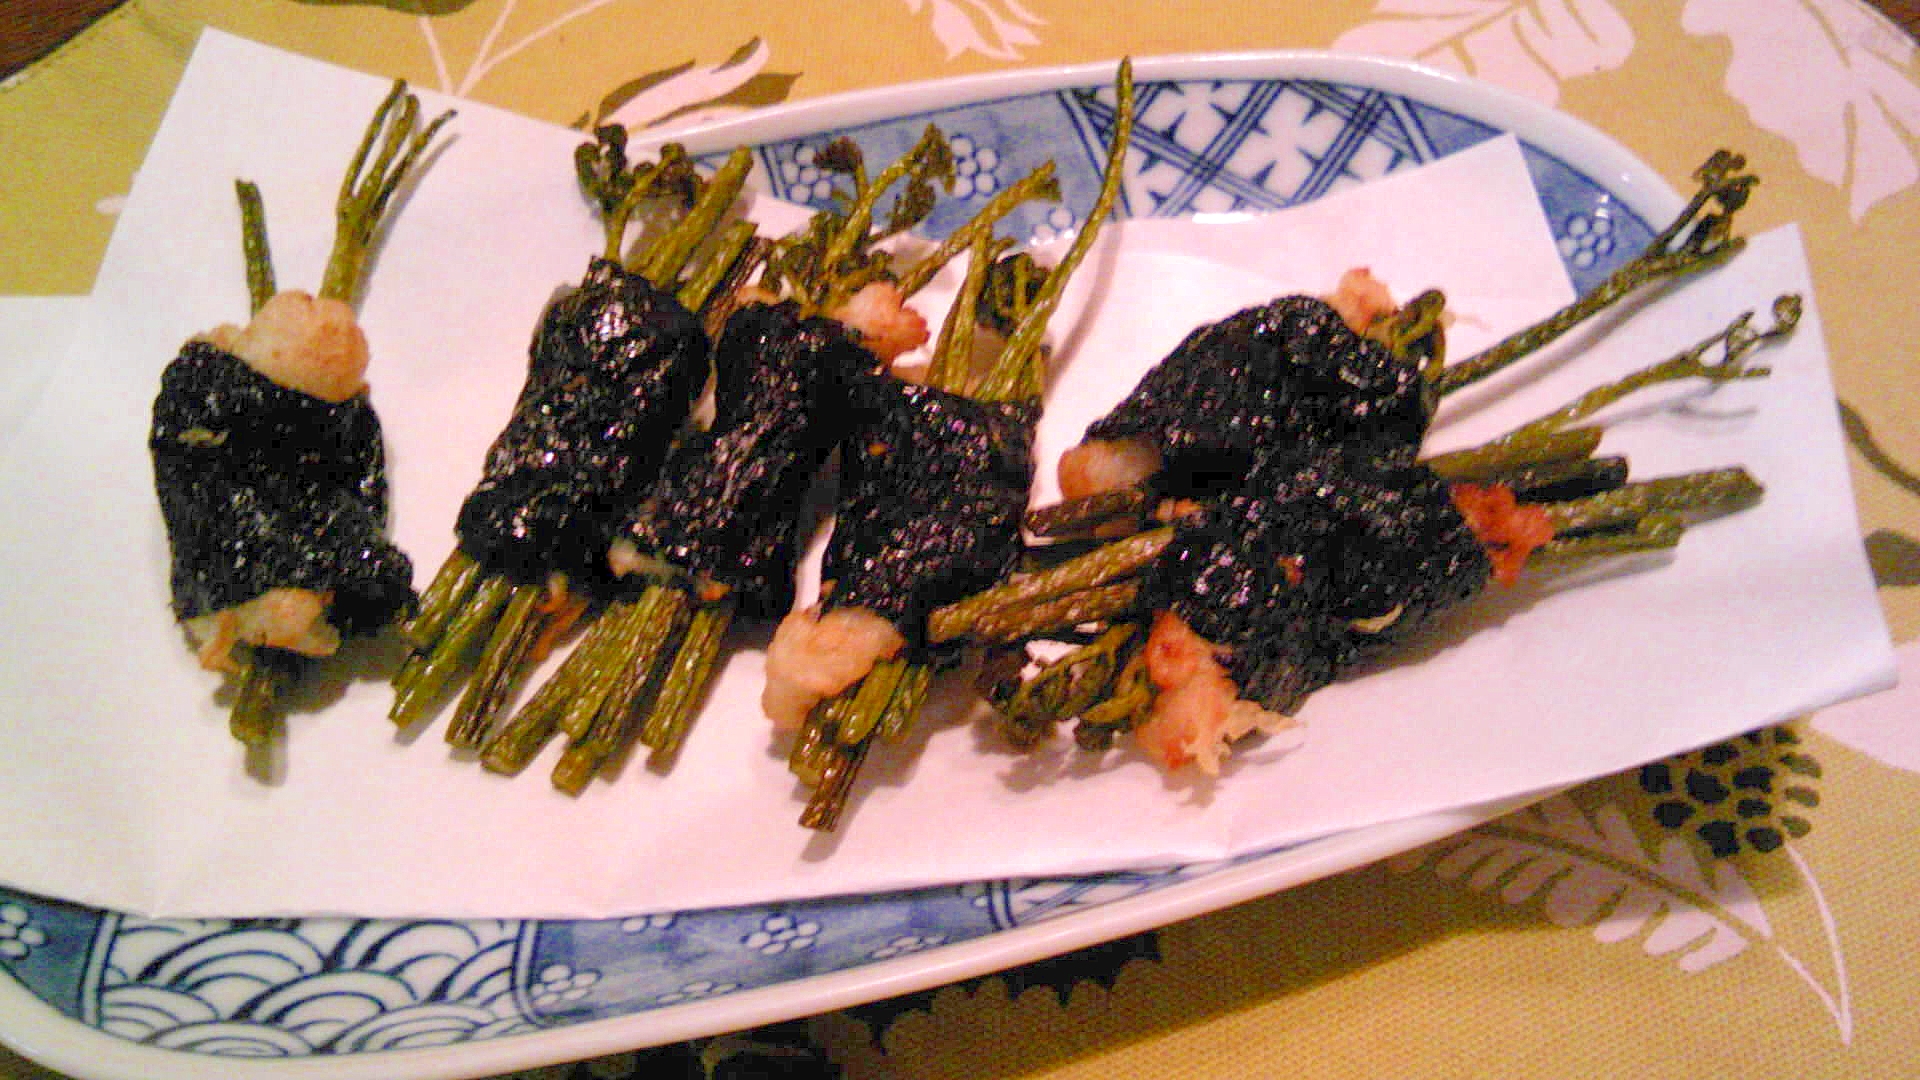 蕨の手芋・海苔巻天ぷら